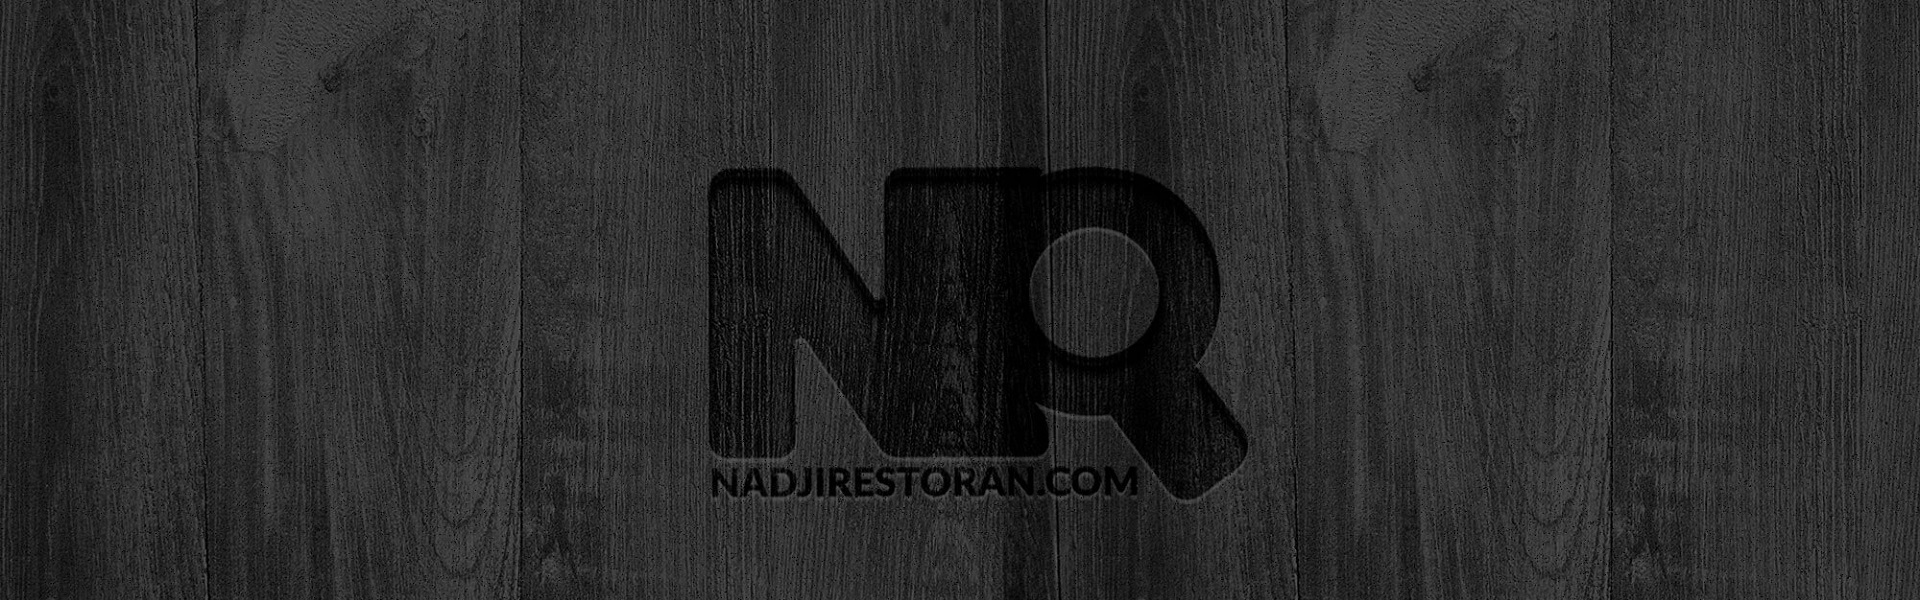 Rent a car Efex | Nadji restoran